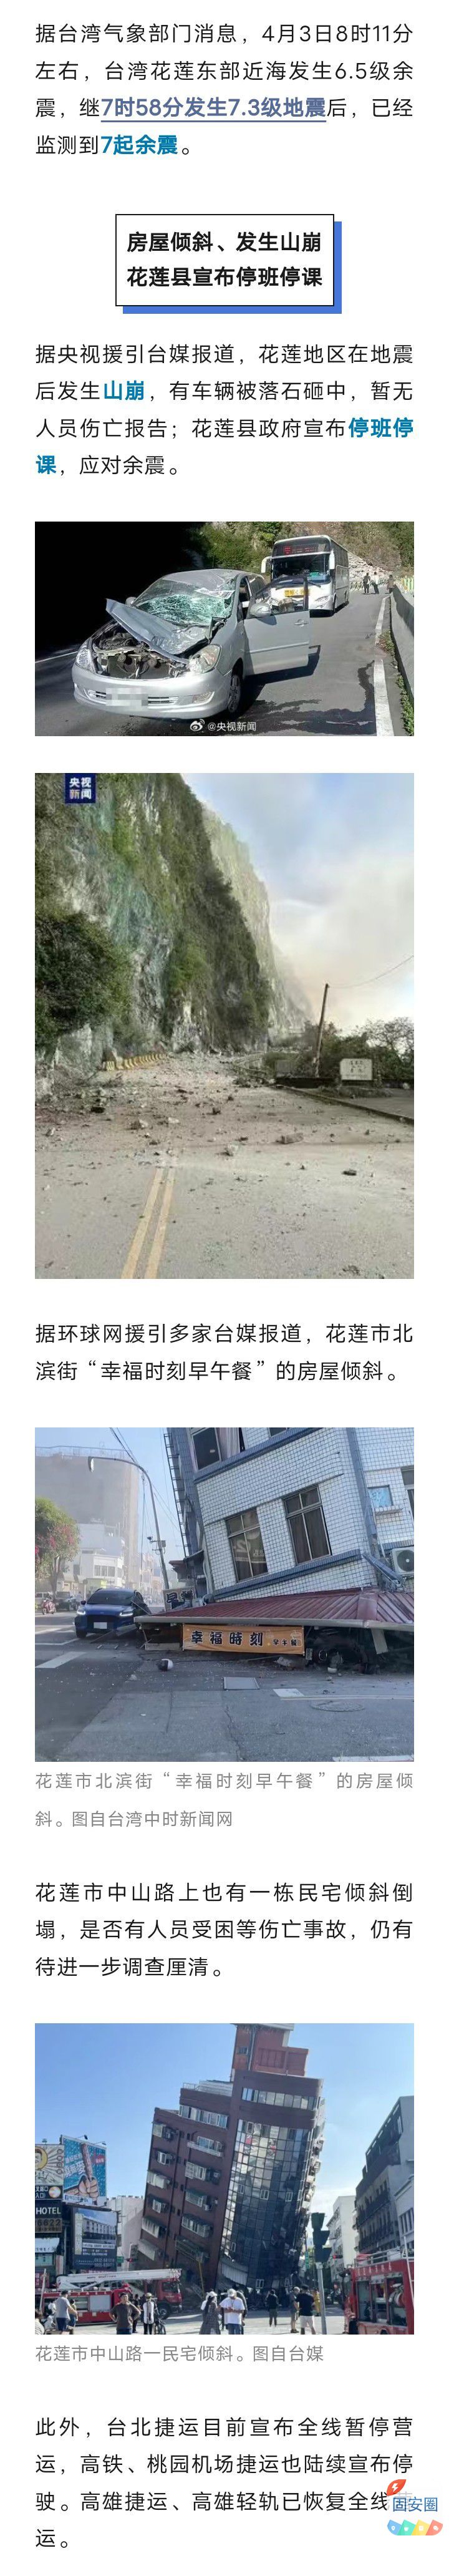 房屋倾斜、山崩，停班停课停运！台湾花莲已监测到7起余震，地震成因——8495 作者:乁沙漠 帖子ID:297903 